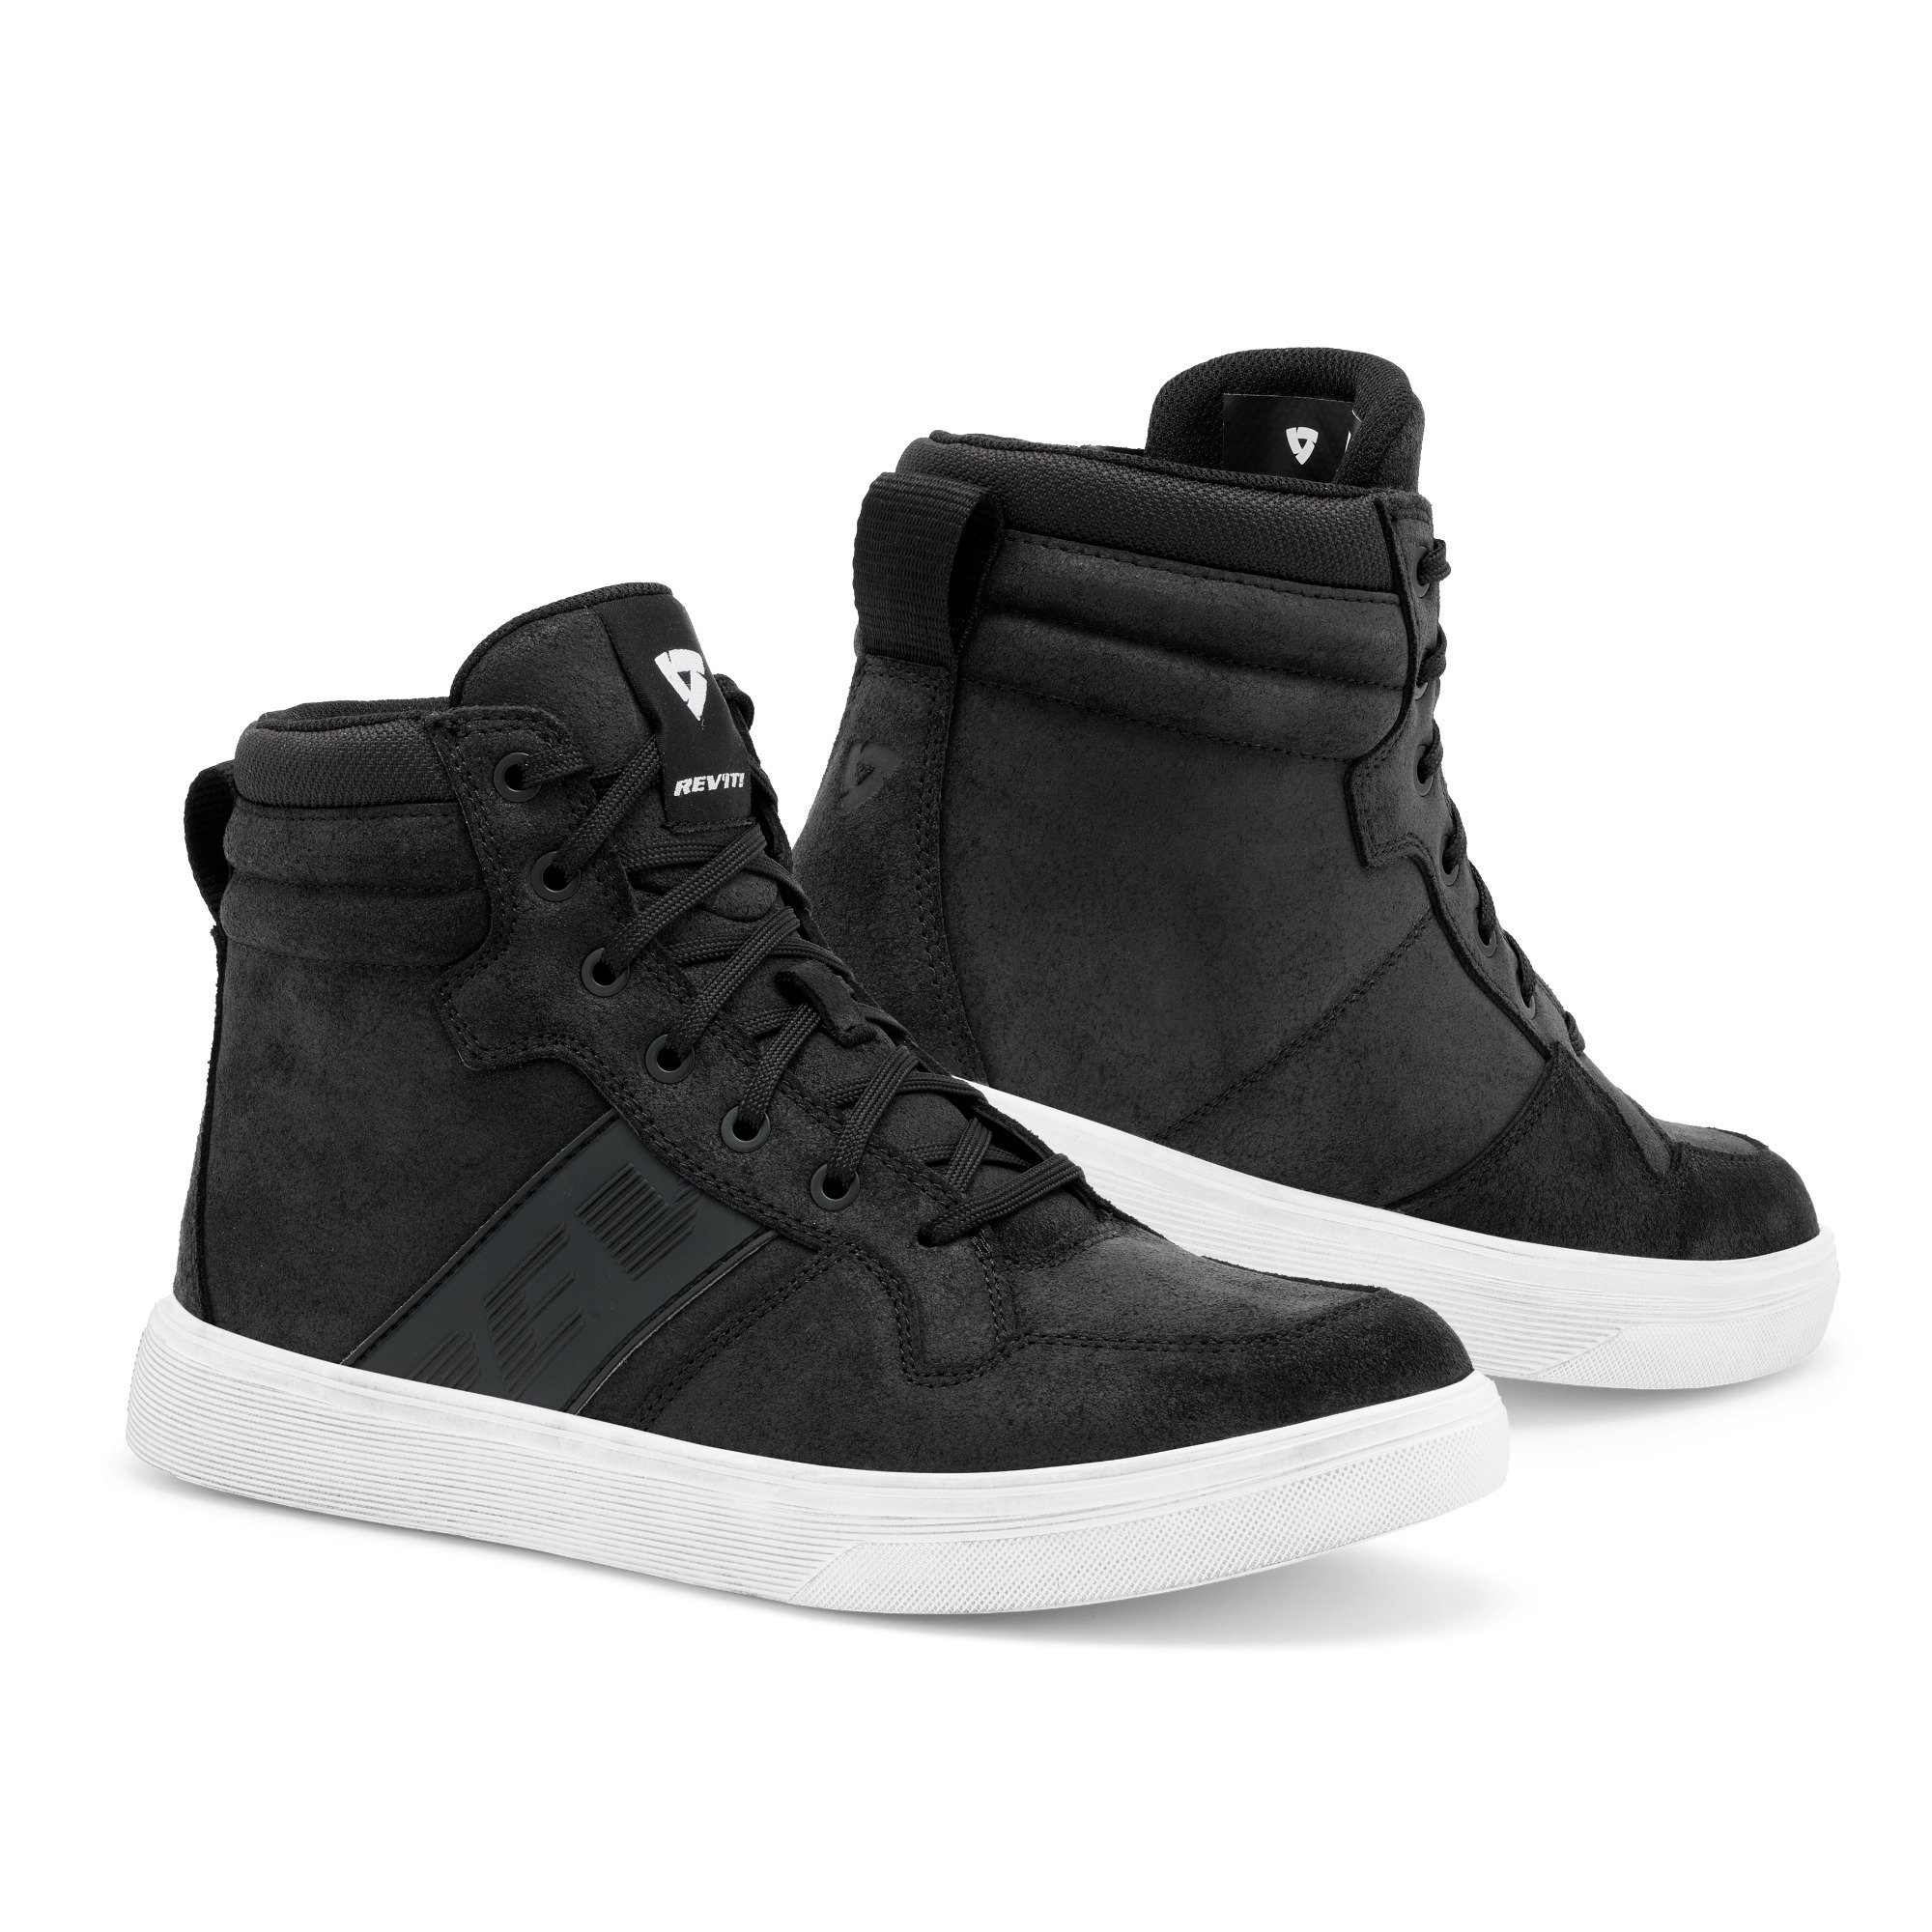 Image of REV'IT! Kick Shoes Black White Size 43 ID 8700001357517